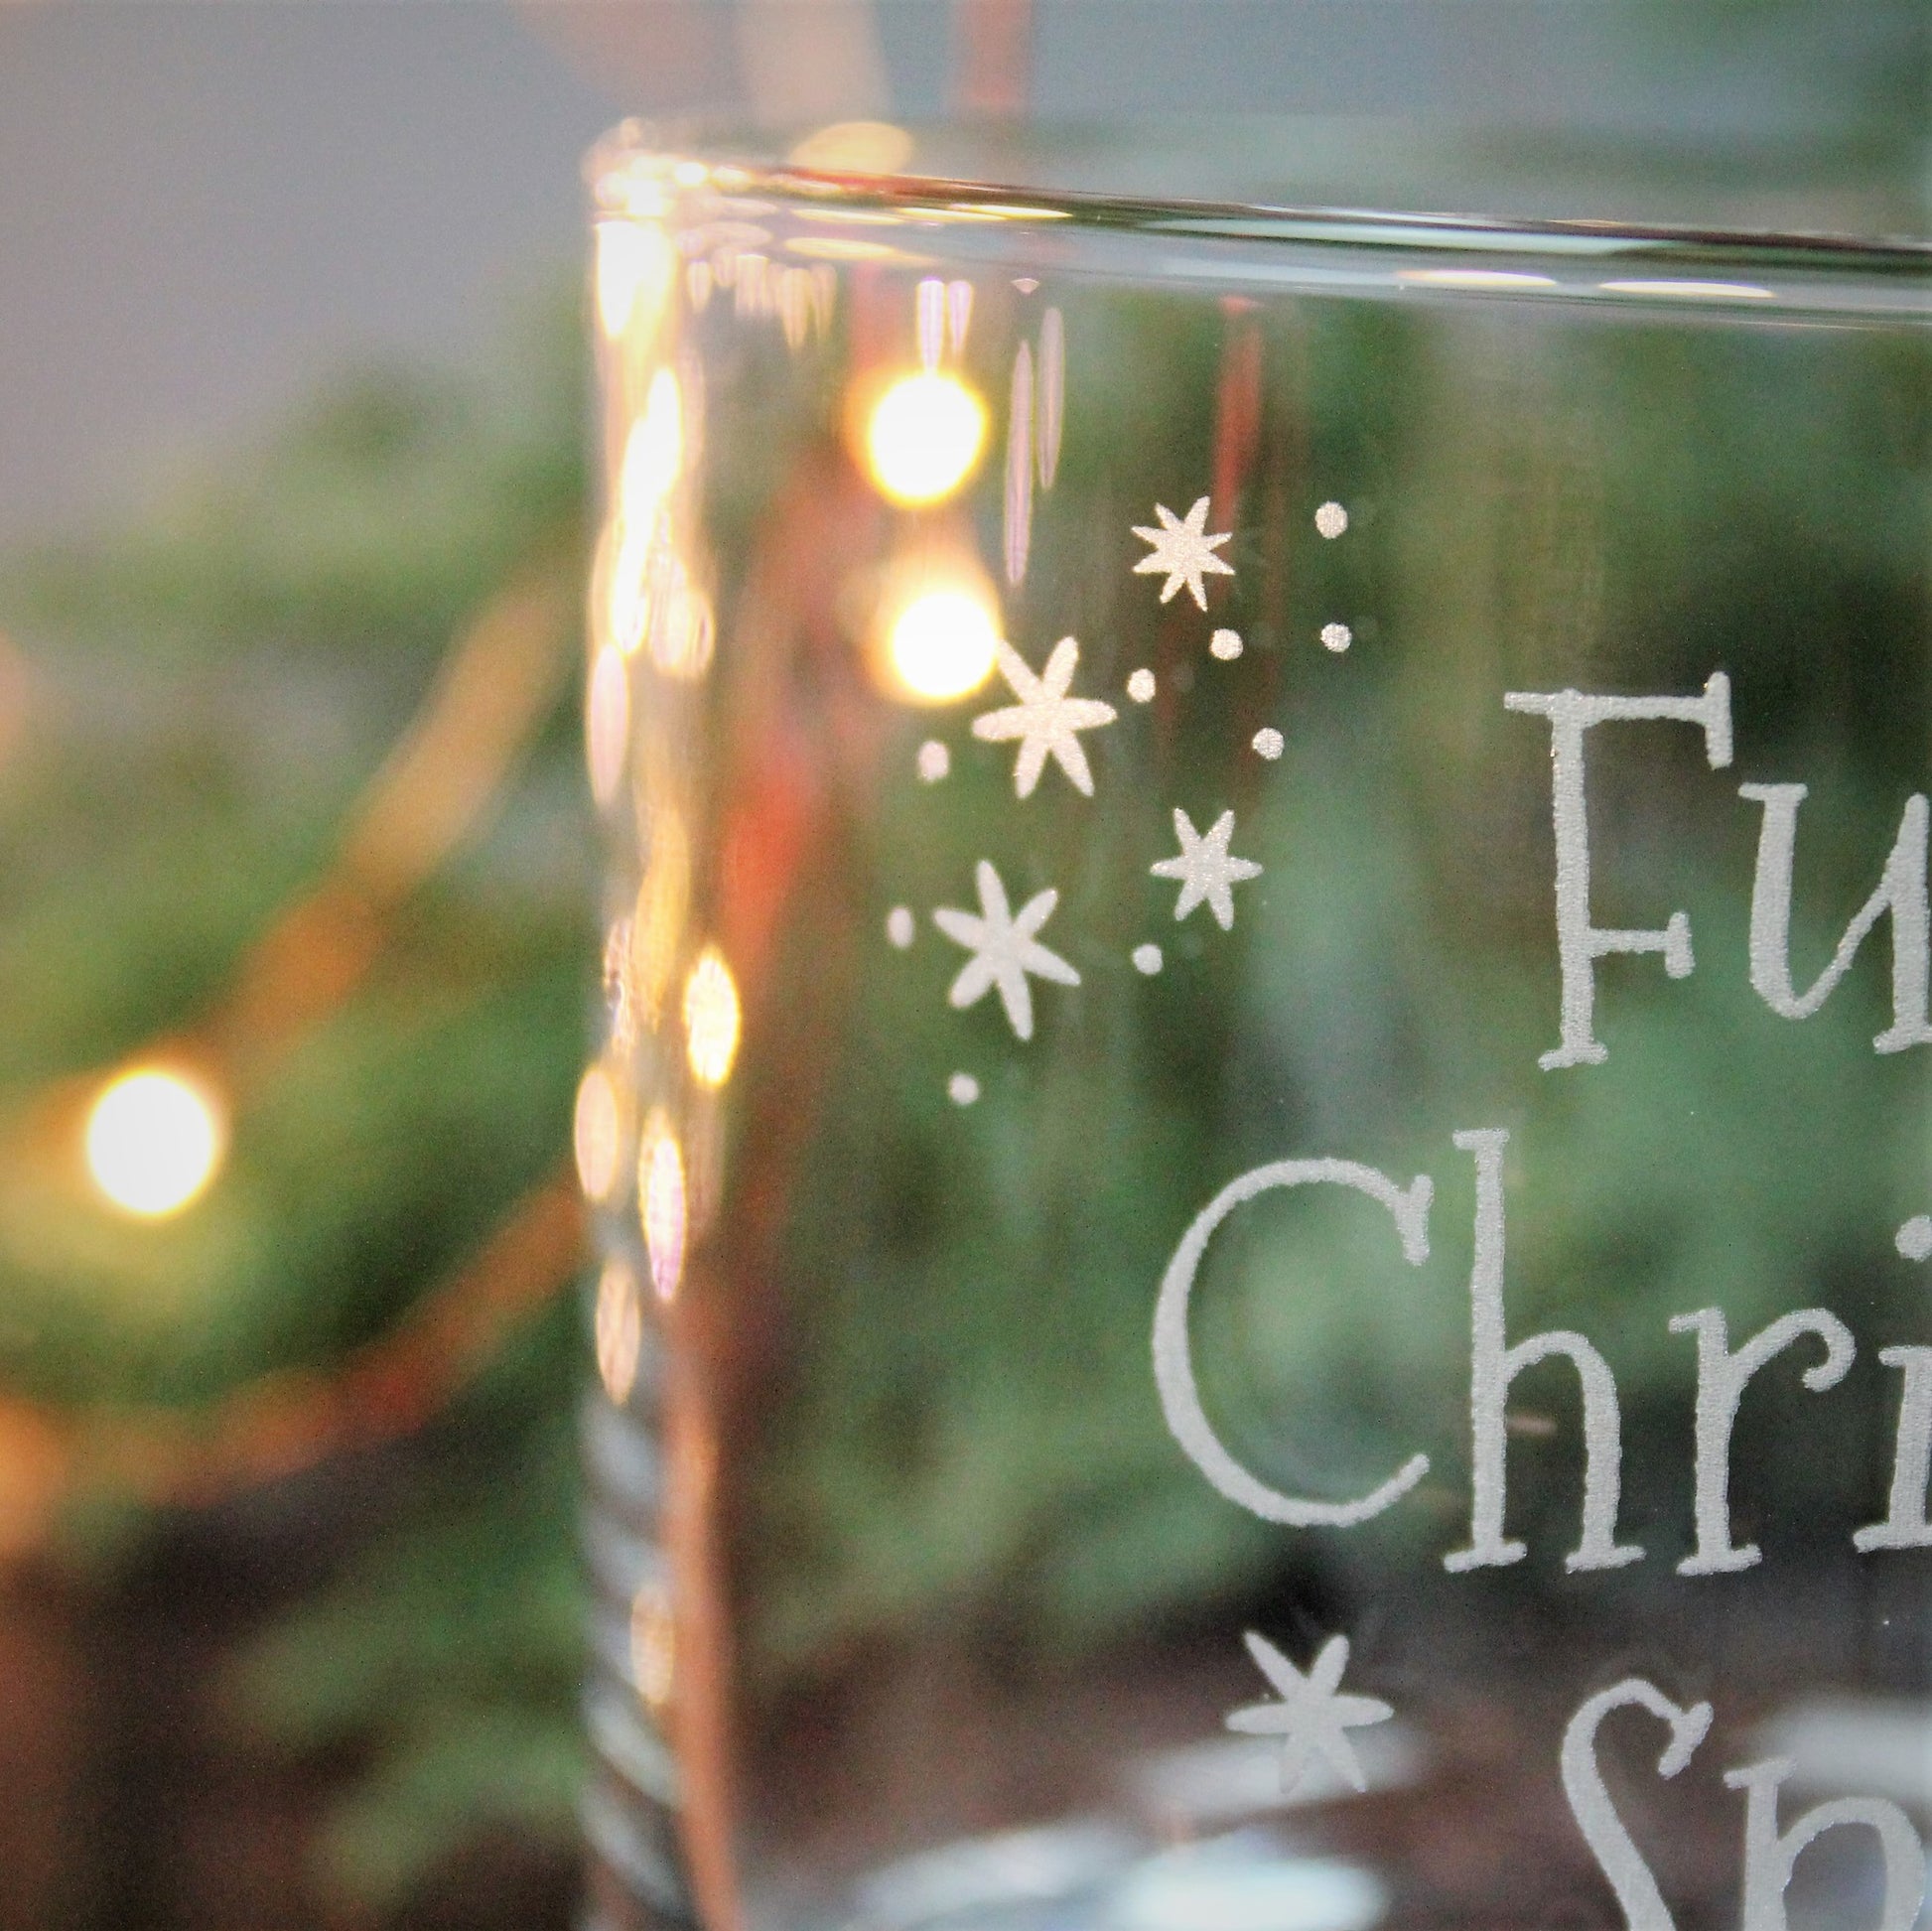 Full of Christmas spirit engraved glass